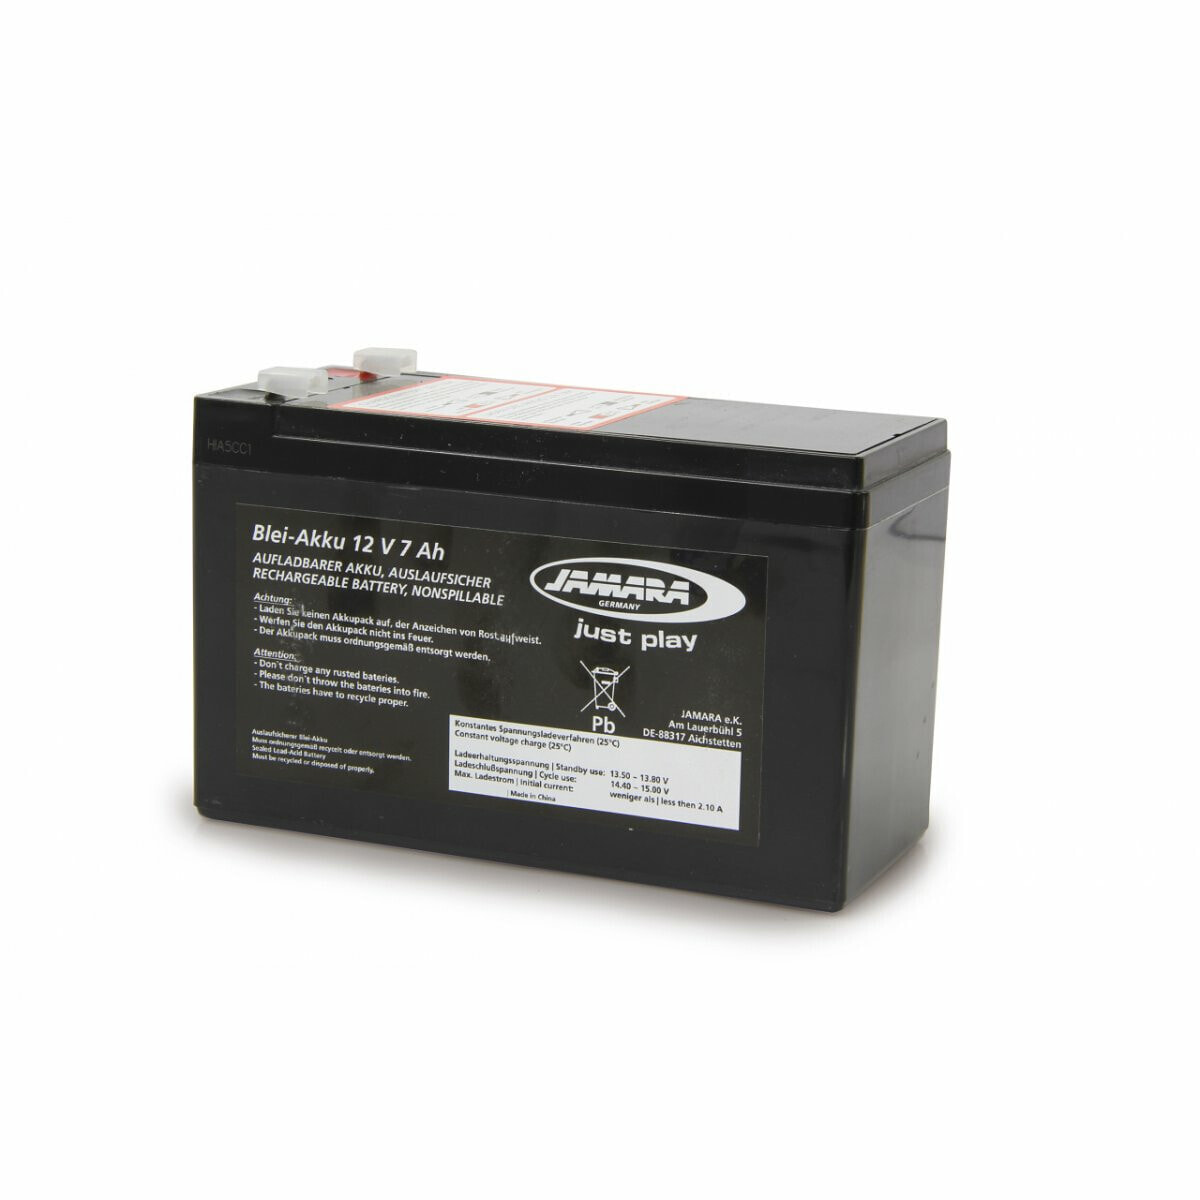 JAMARA 412593 - Battery